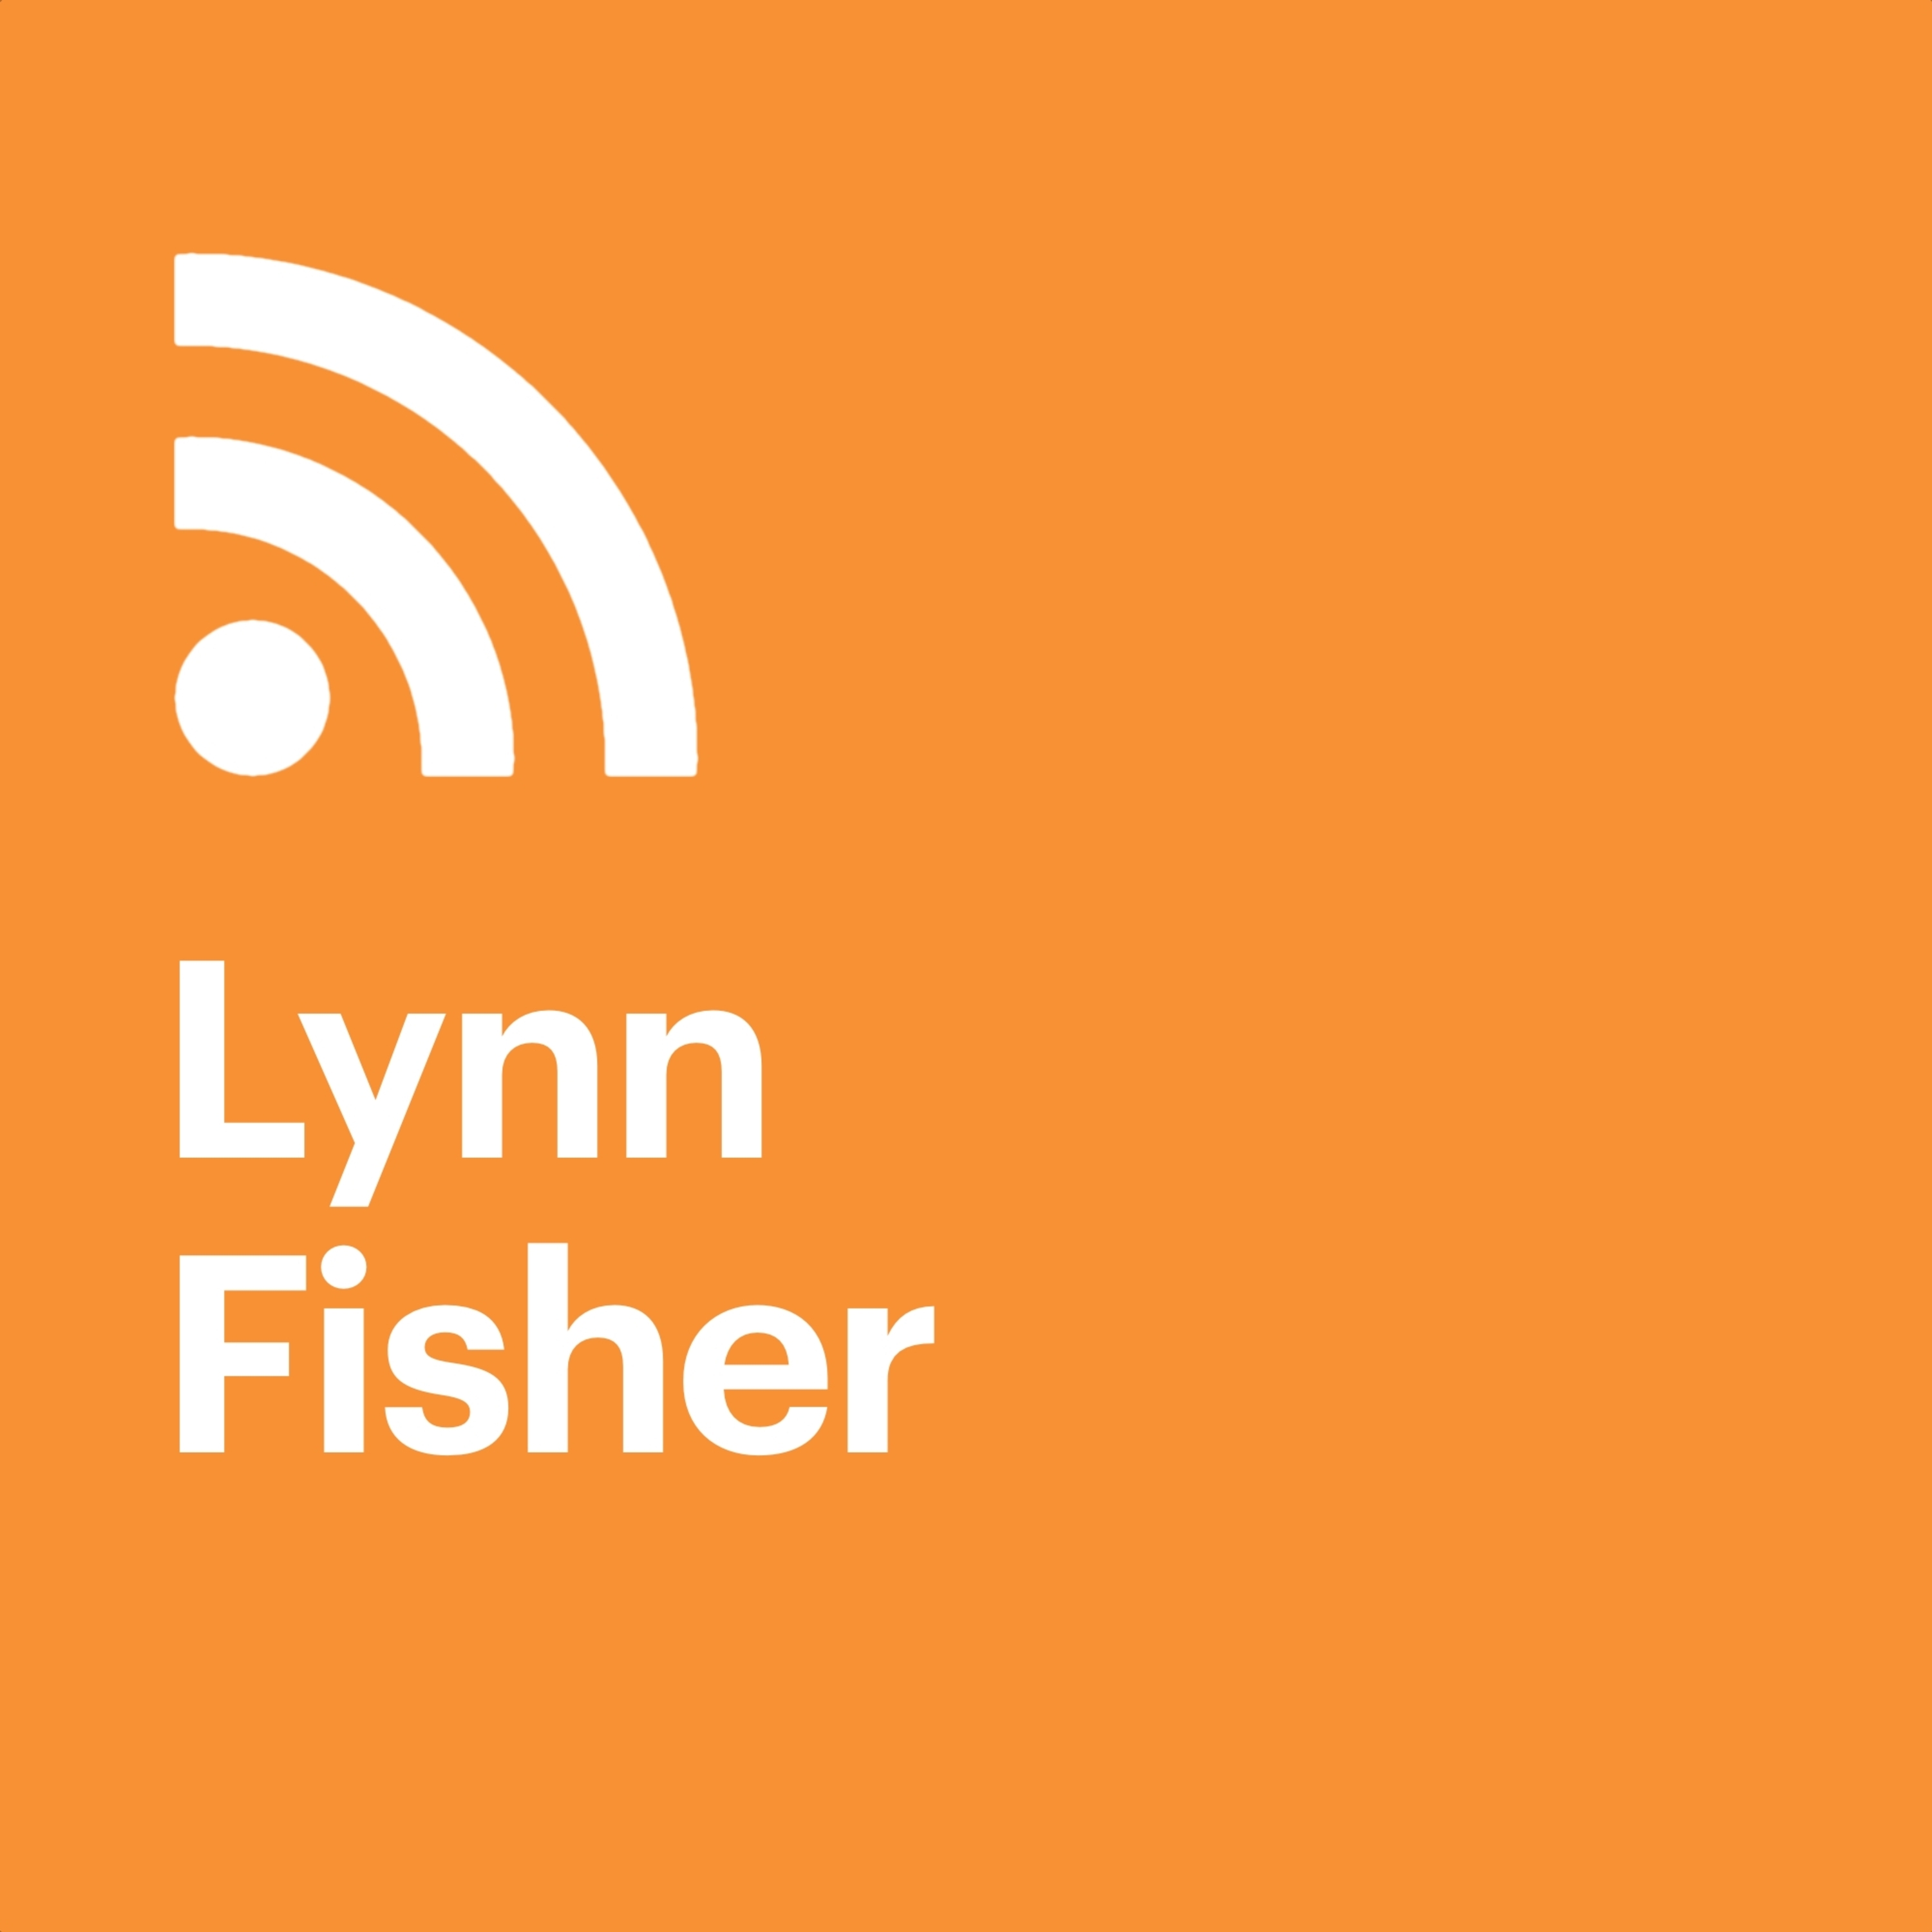 Lynn Fisher